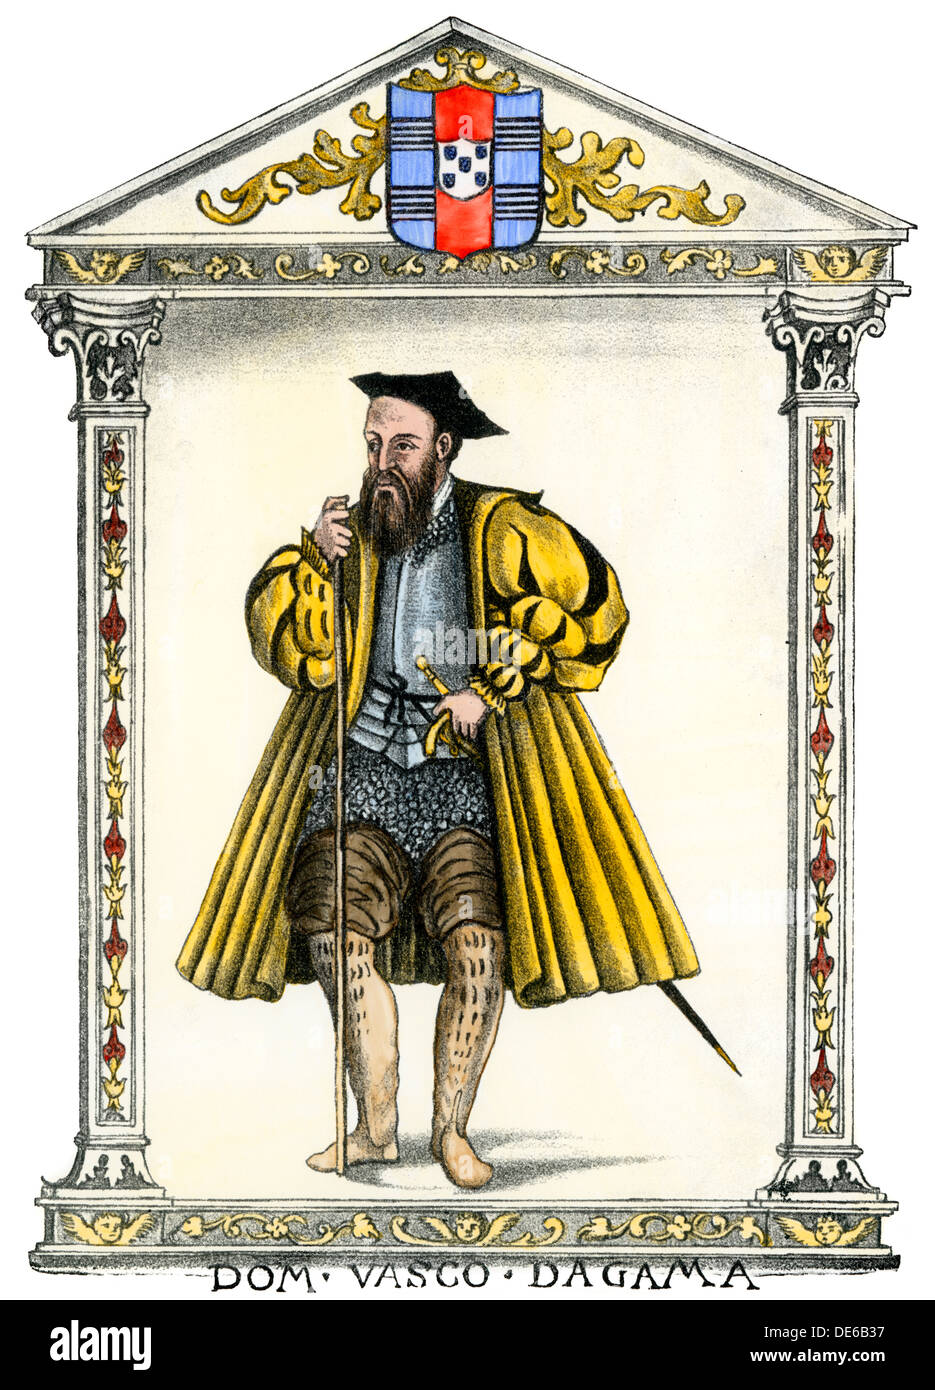 Le navigateur portugais Vasco da Gama, portrait complet. À la main, gravure sur bois Banque D'Images